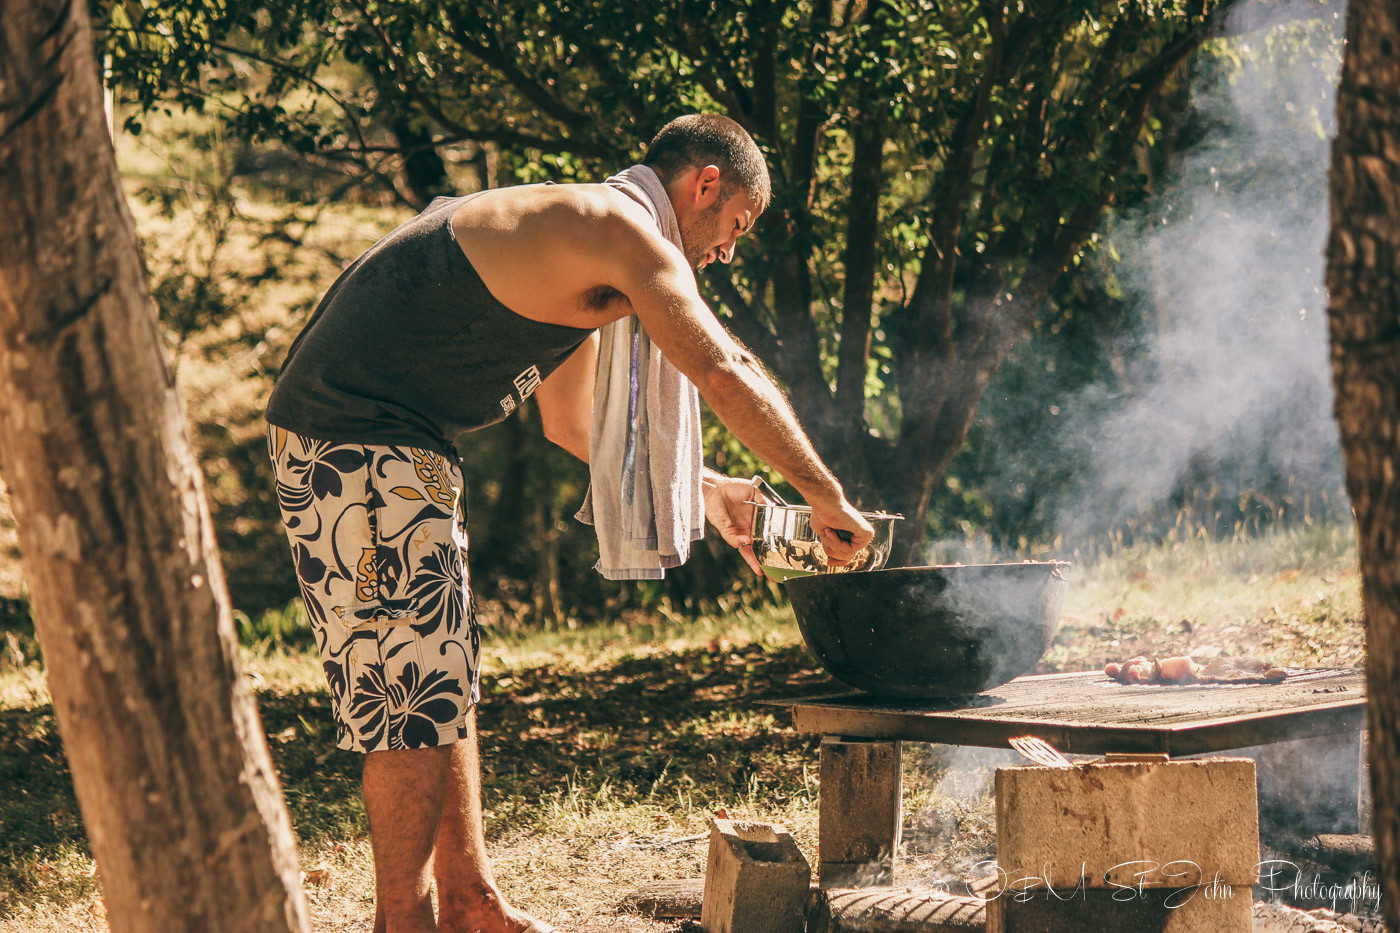 Max cooking gallo pinto in Costa Rica, costa rican recipes